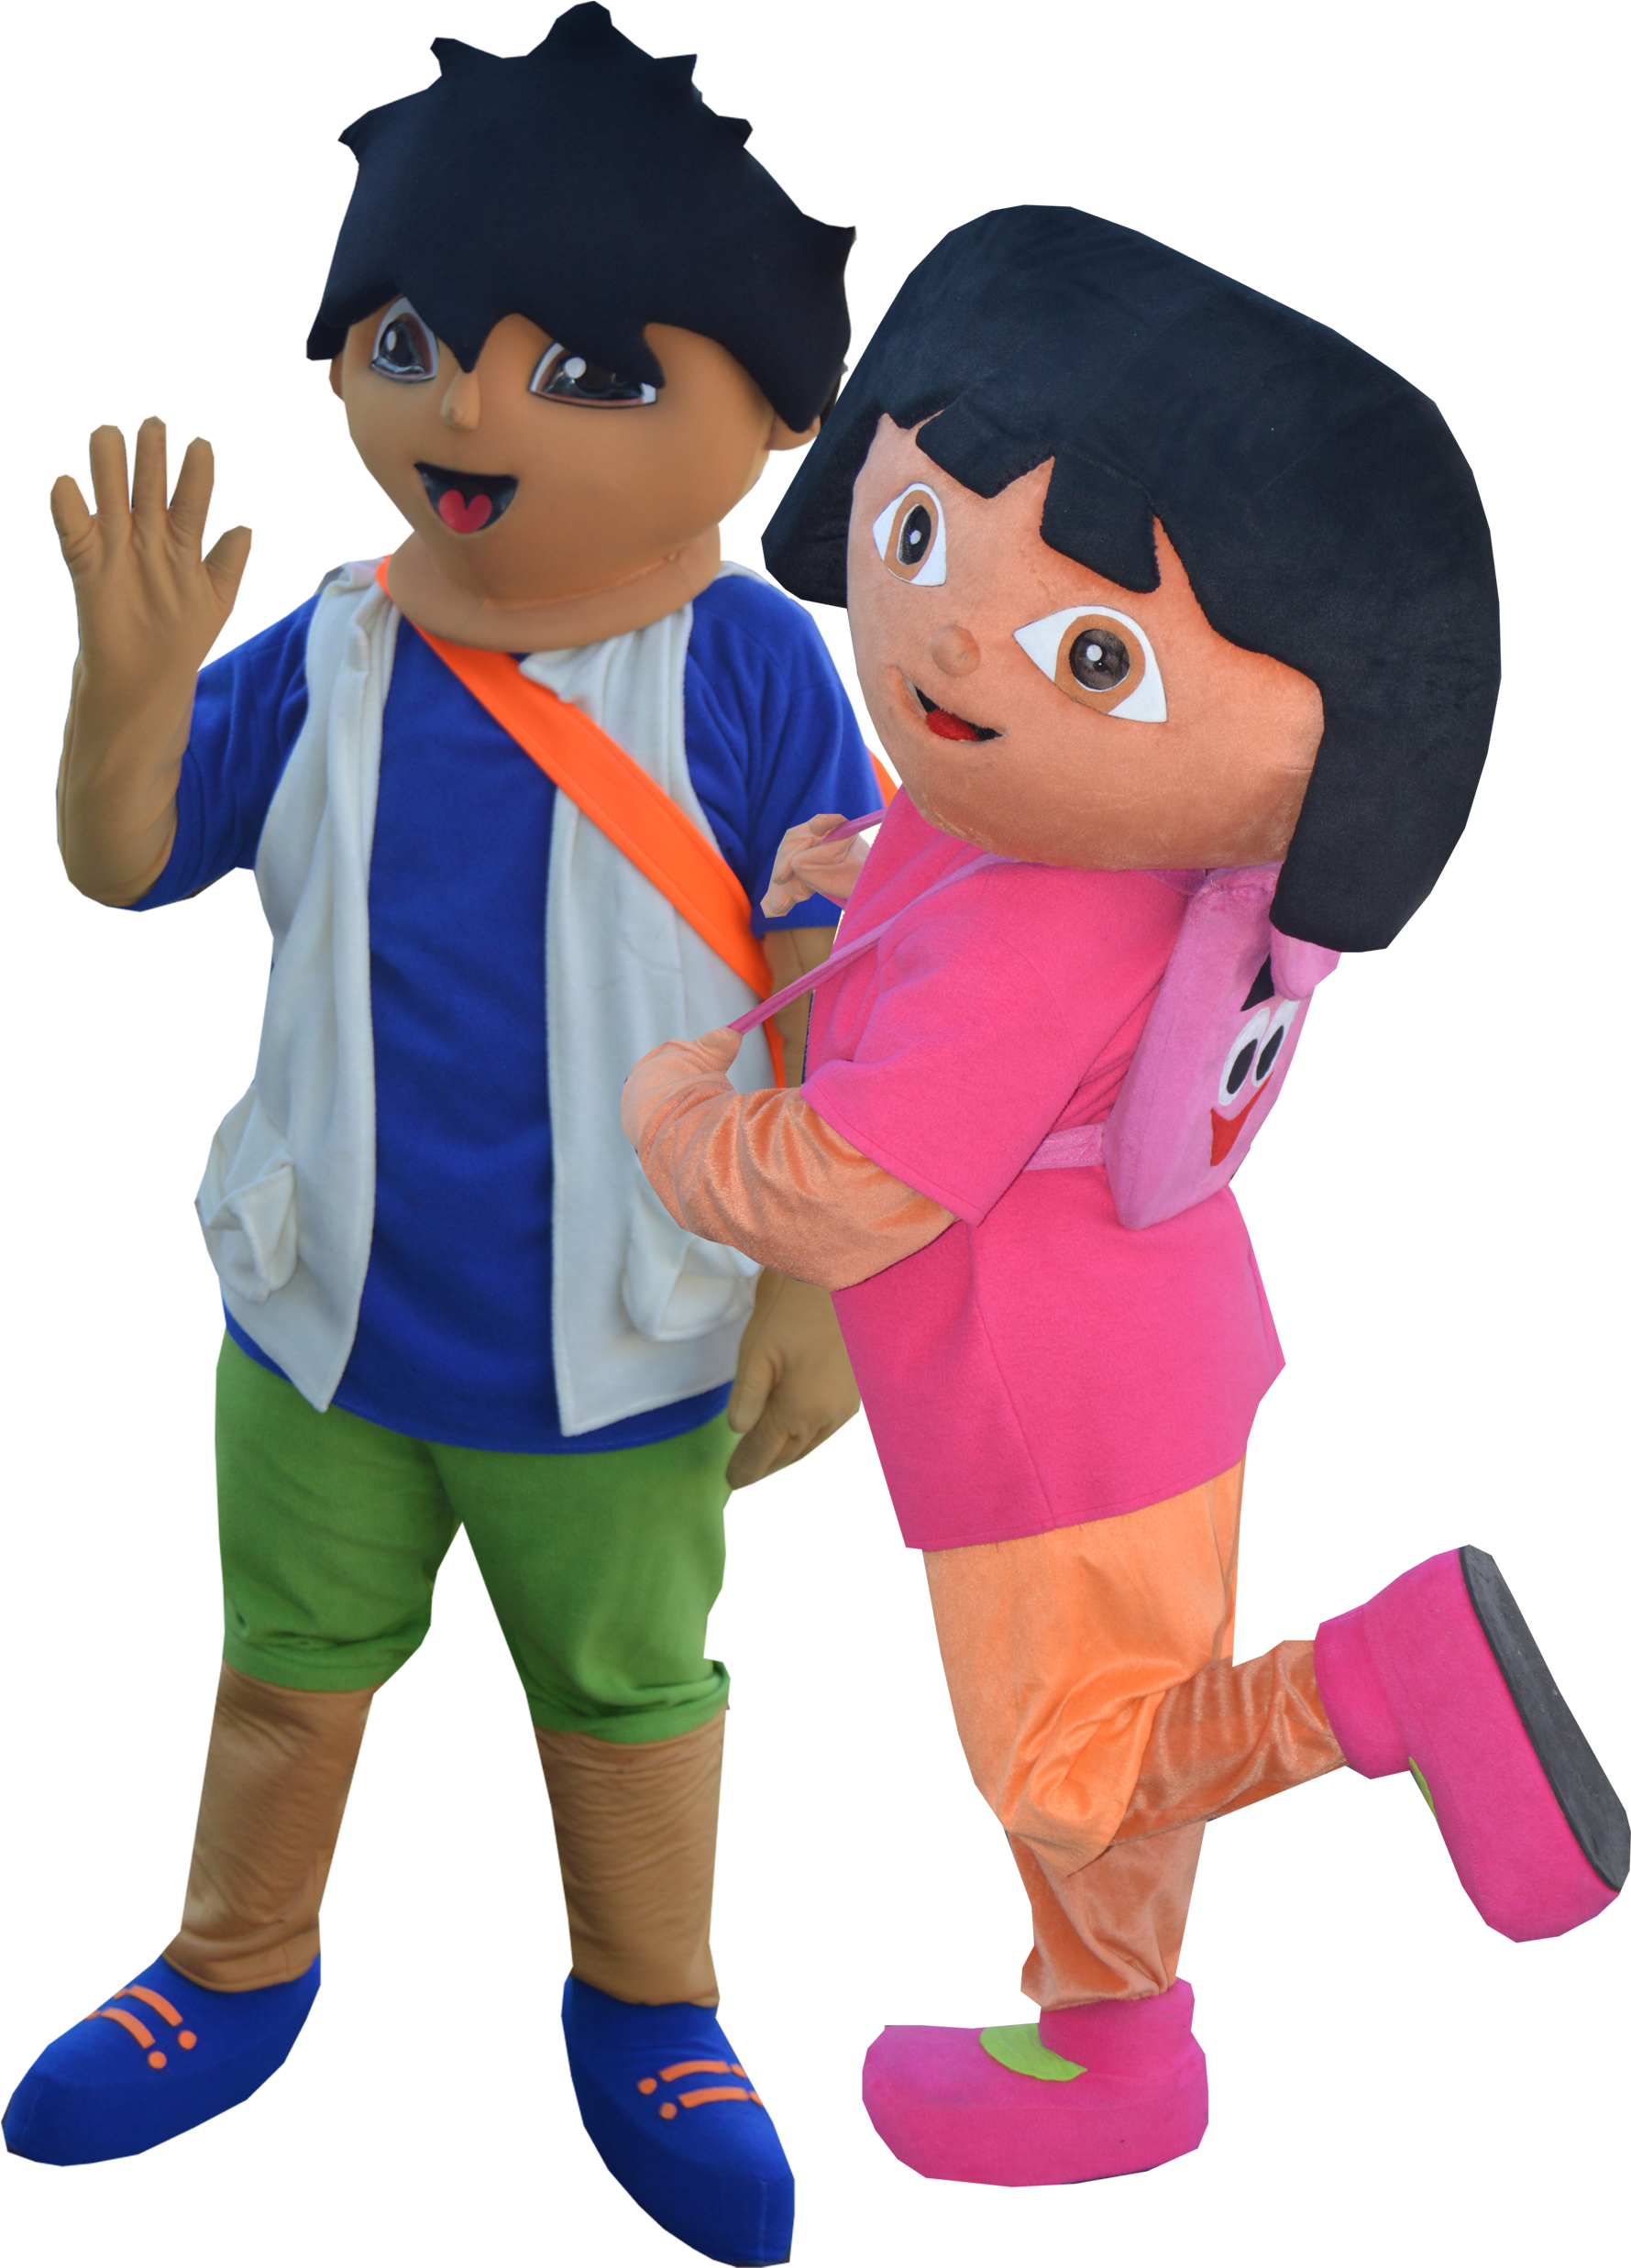 Dora & Diego Go - Child (3300x2550)